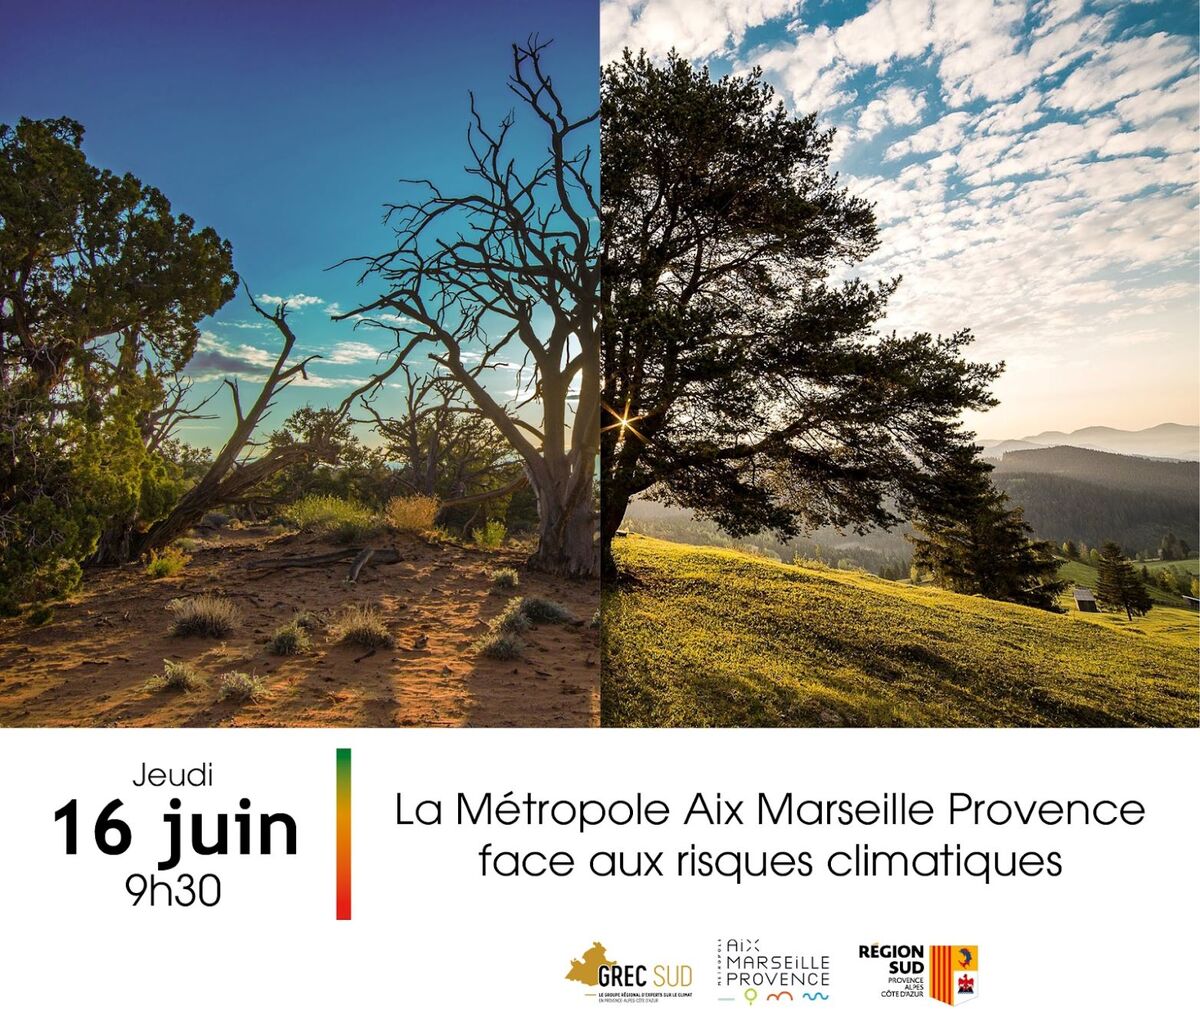 La Métropole Aix-Marseille-Provence face aux risques climatiques.